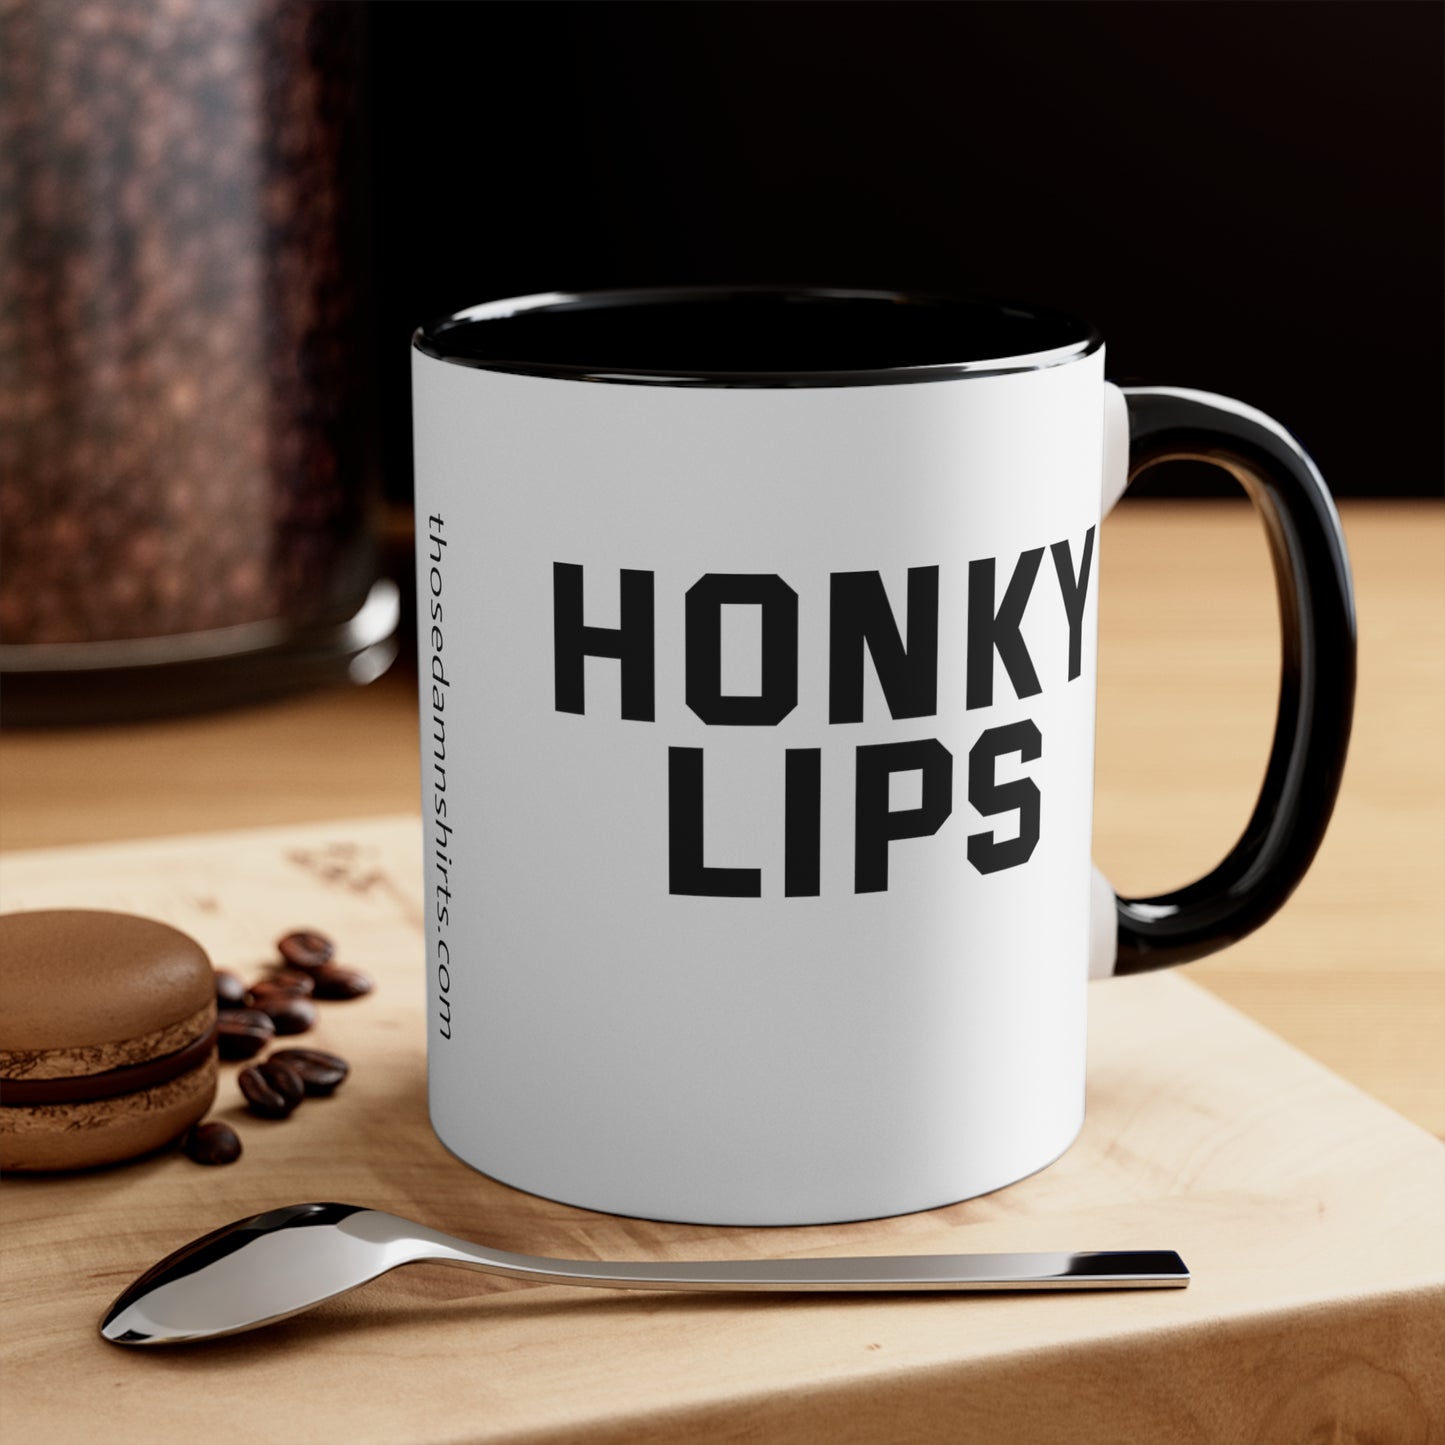 Honky Lips Mug, 11oz